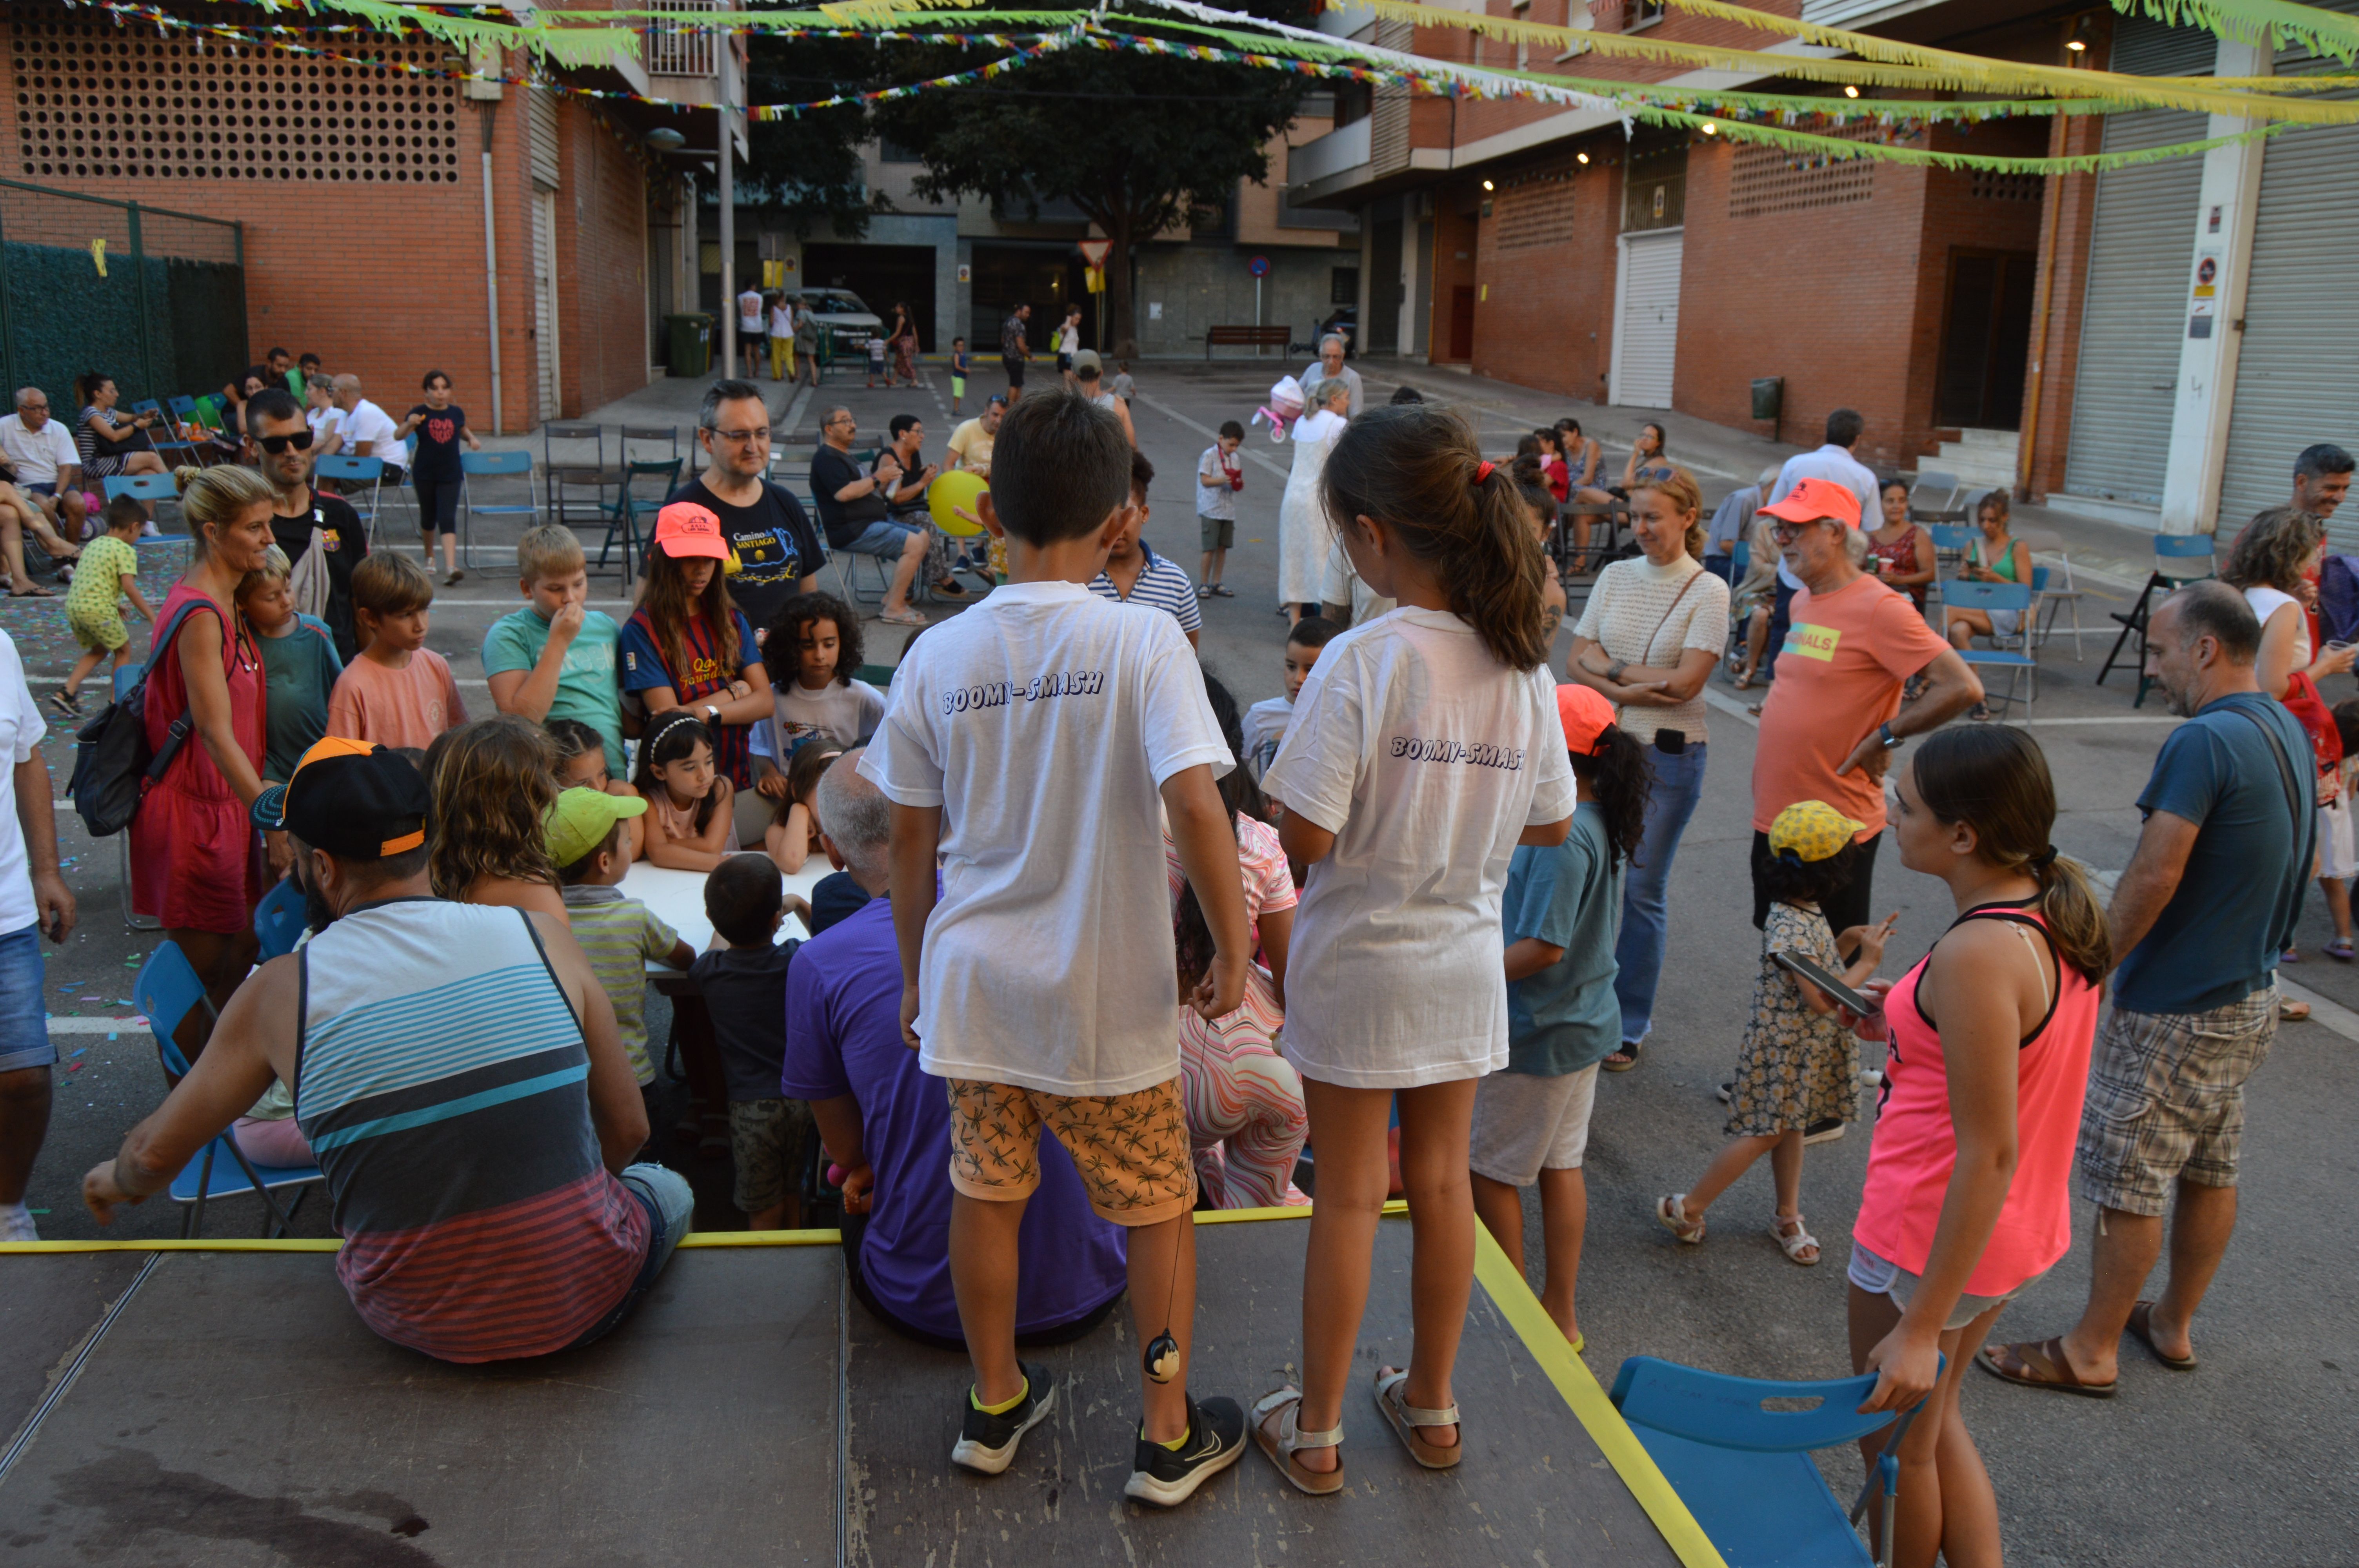 Espectacle de màgia amb el Mag Laruns al passatge Santa Eugènia a les festes de Can Xarau. FOTO: Nora Muñoz Otero